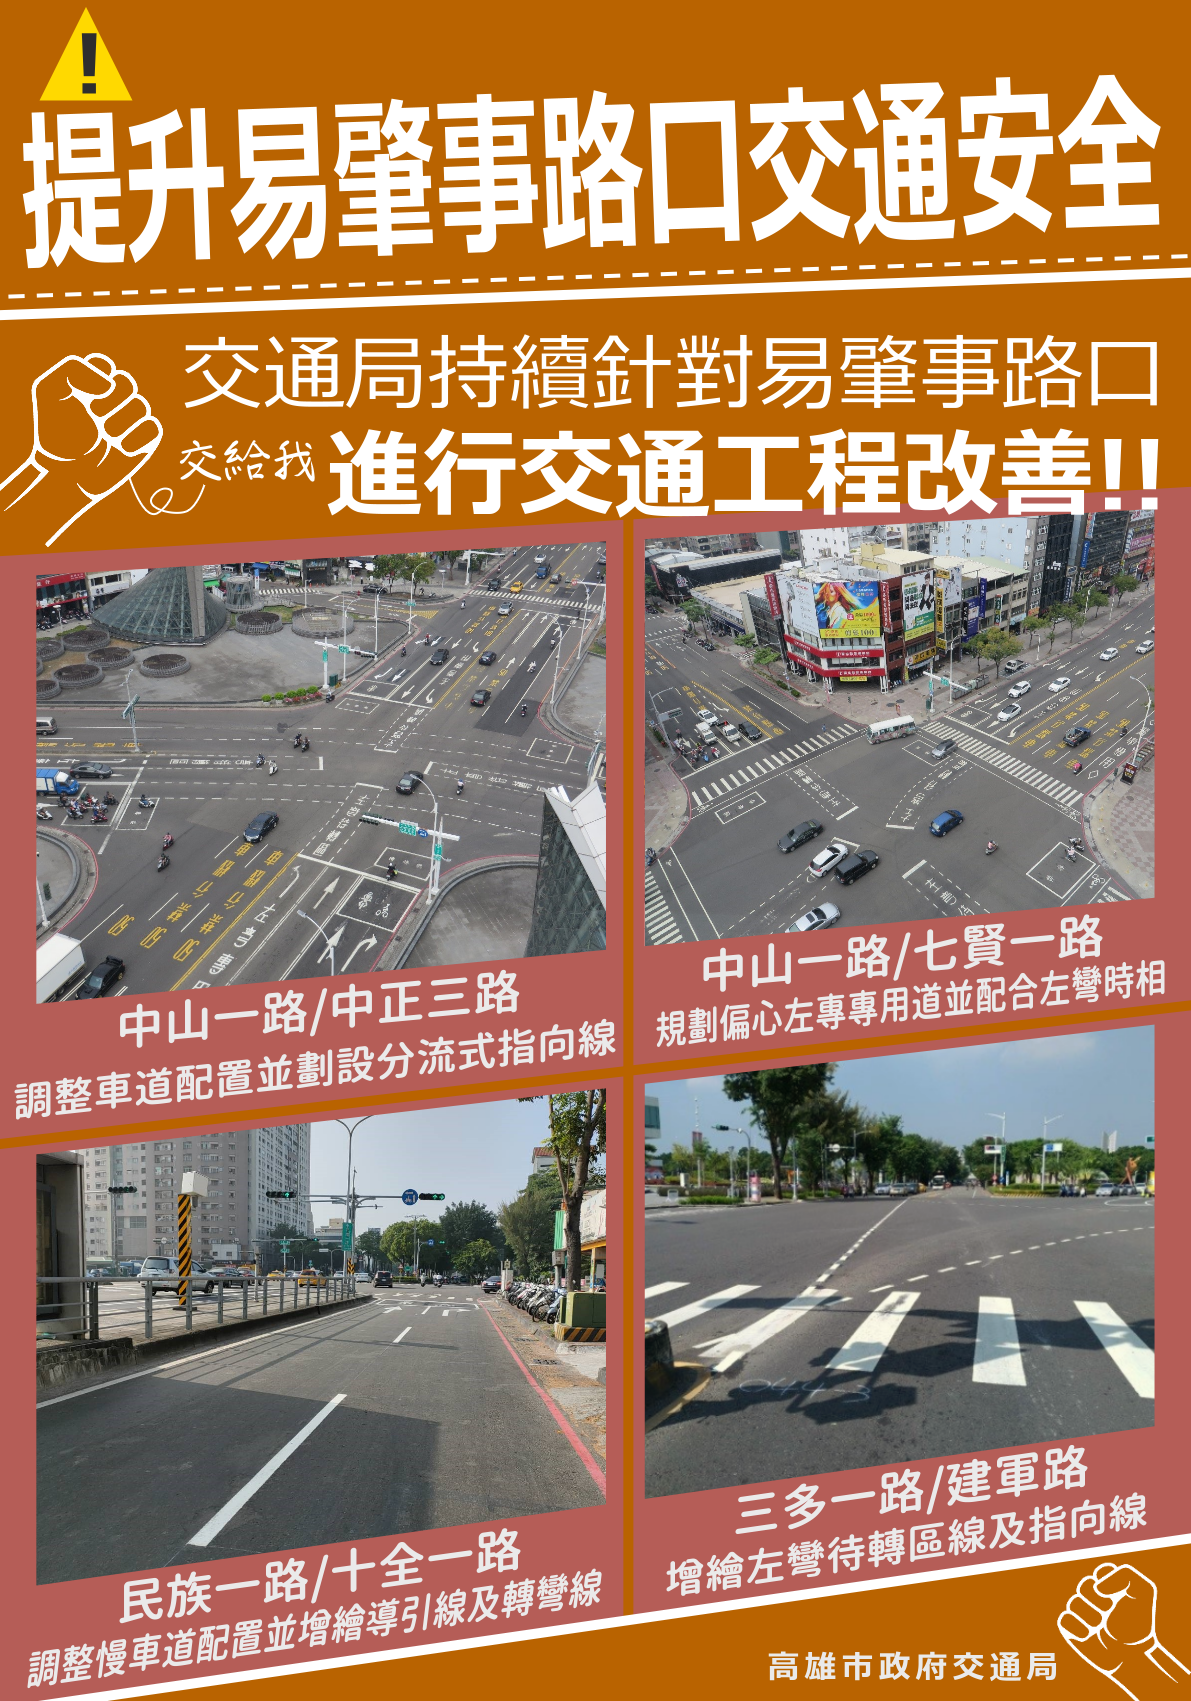 高市交通工程改善不間斷  全面提升易肇事路口交通安全